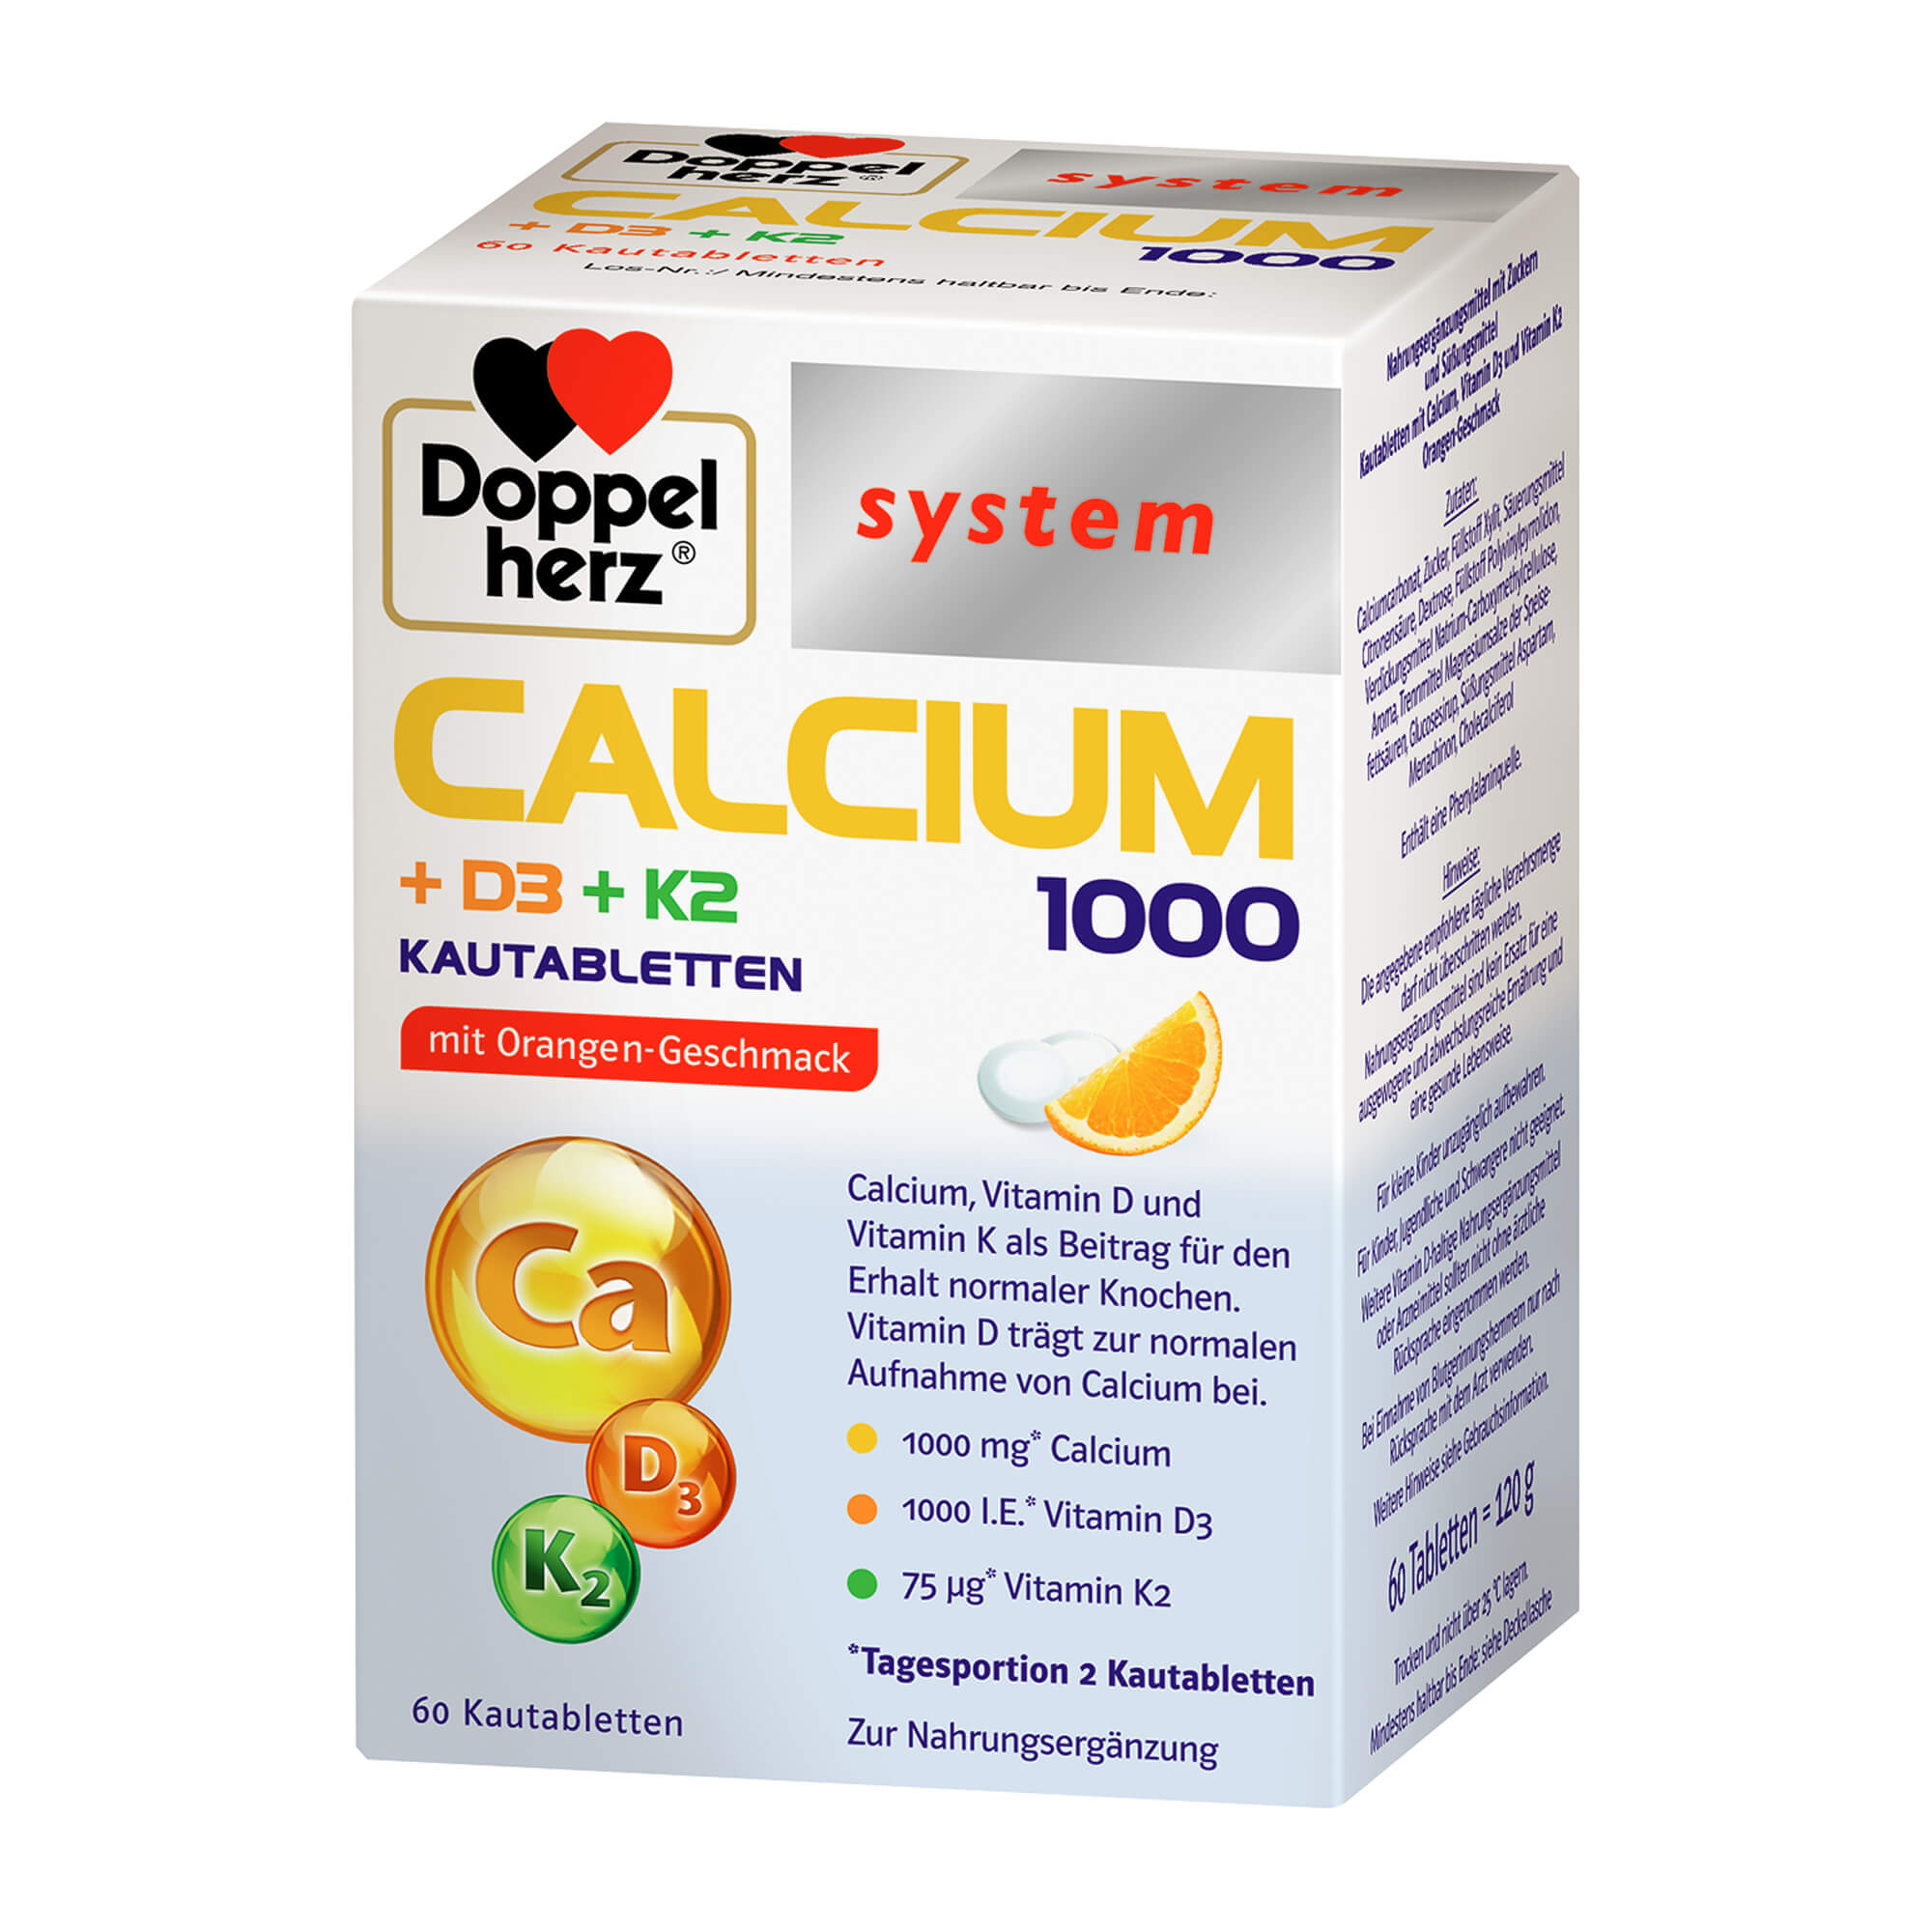 Kautabletten mit Calcium, Vitamin D3 und Vitamin K2.